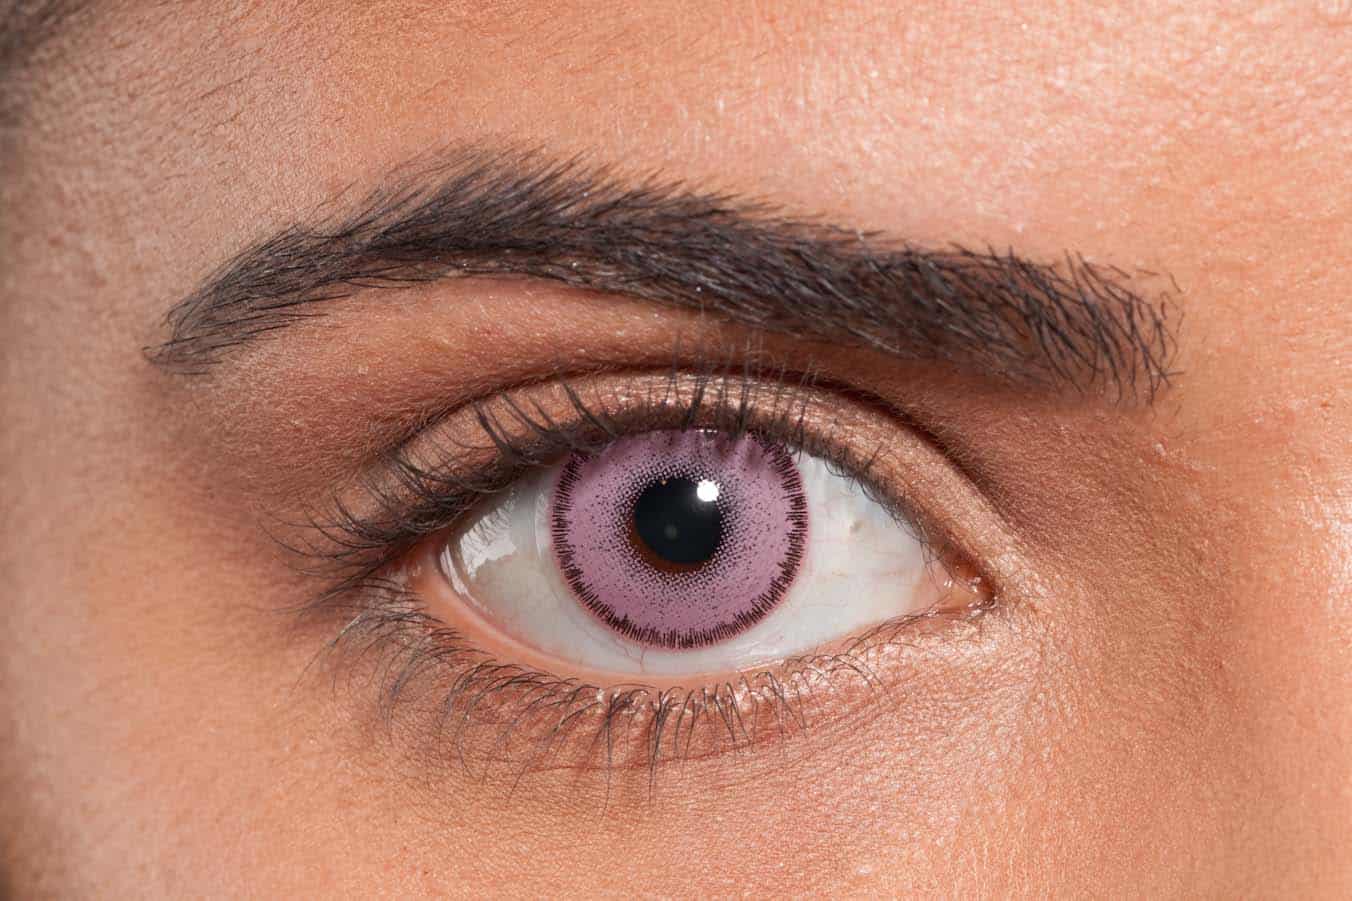  عيون البنفسج: أندر 5 أنواع من ألوان العيون في العالم